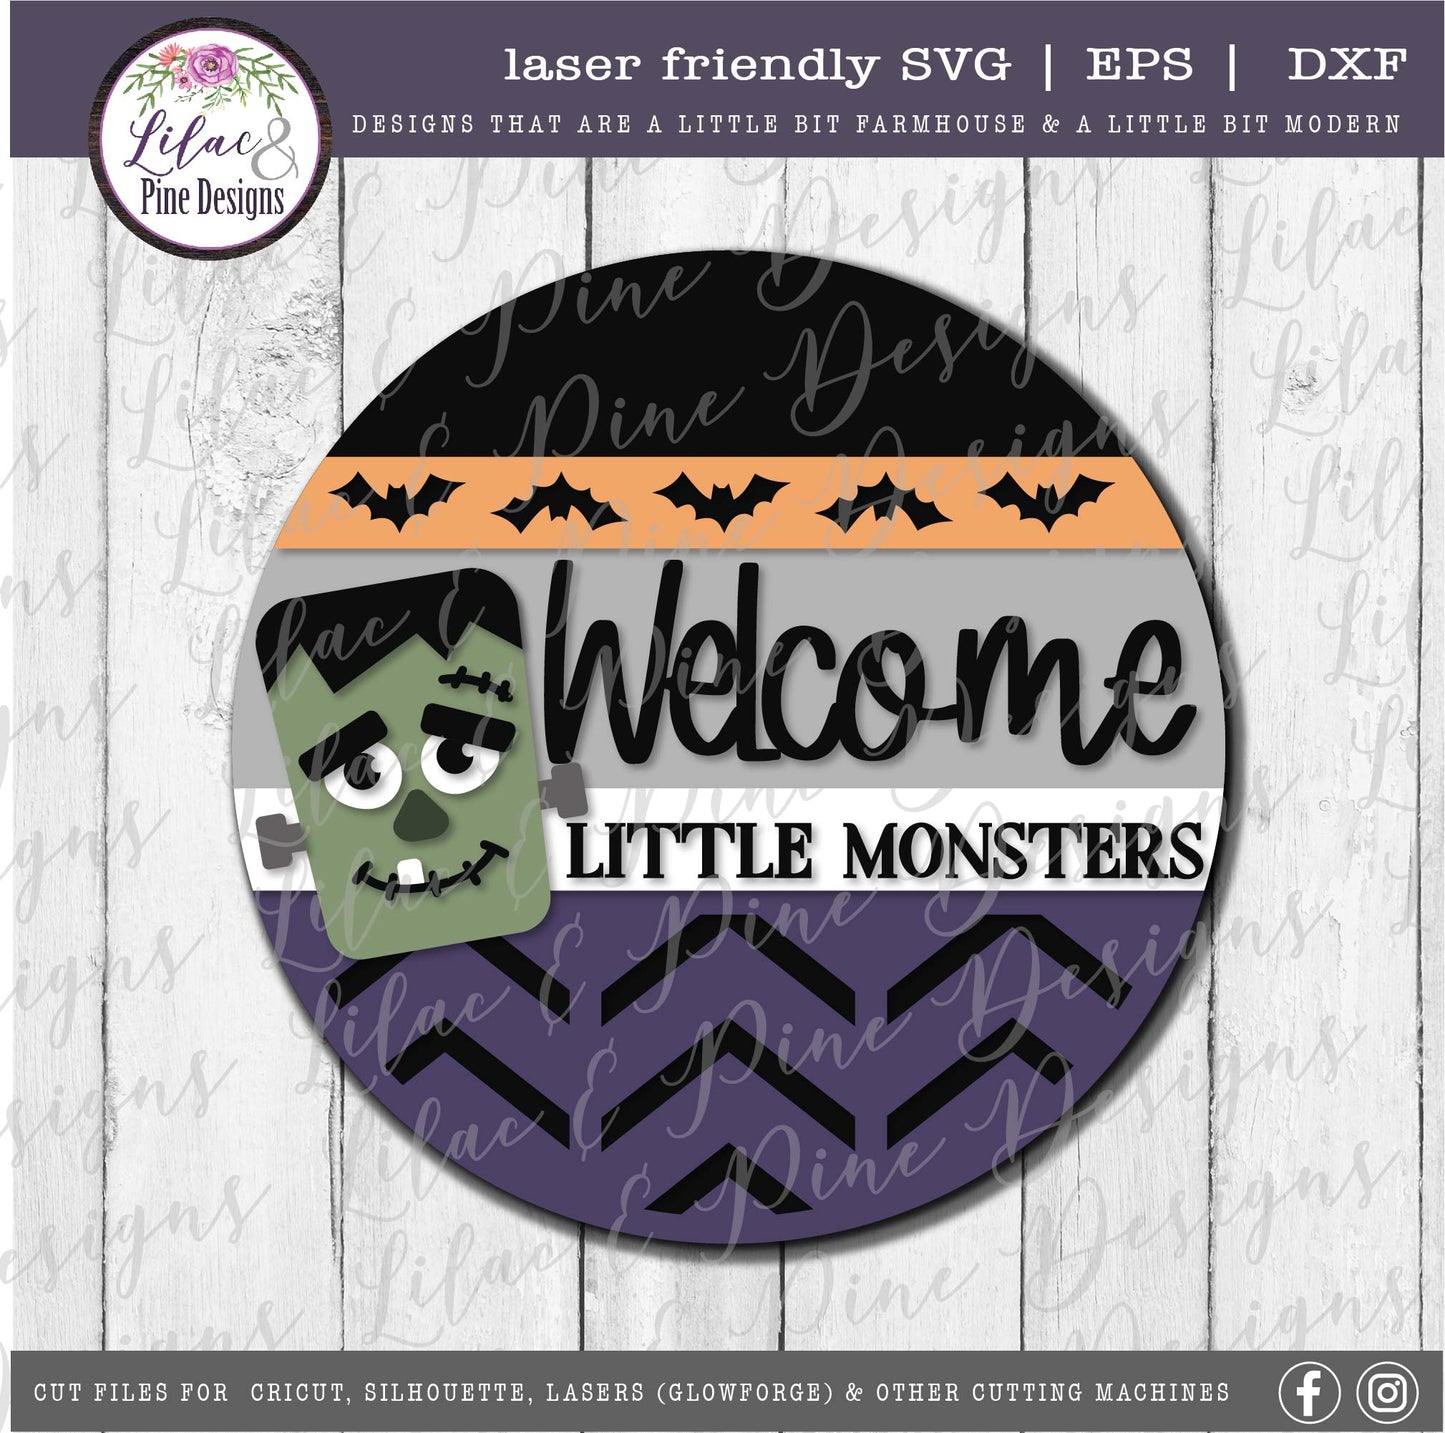 Frankenstein Halloween sign SVG, Welcome Little Monsters SVG, Frankie SVG, bats SVG, Halloween porch decor, Frankenstein door round, laser cut file, Glowforge SVG